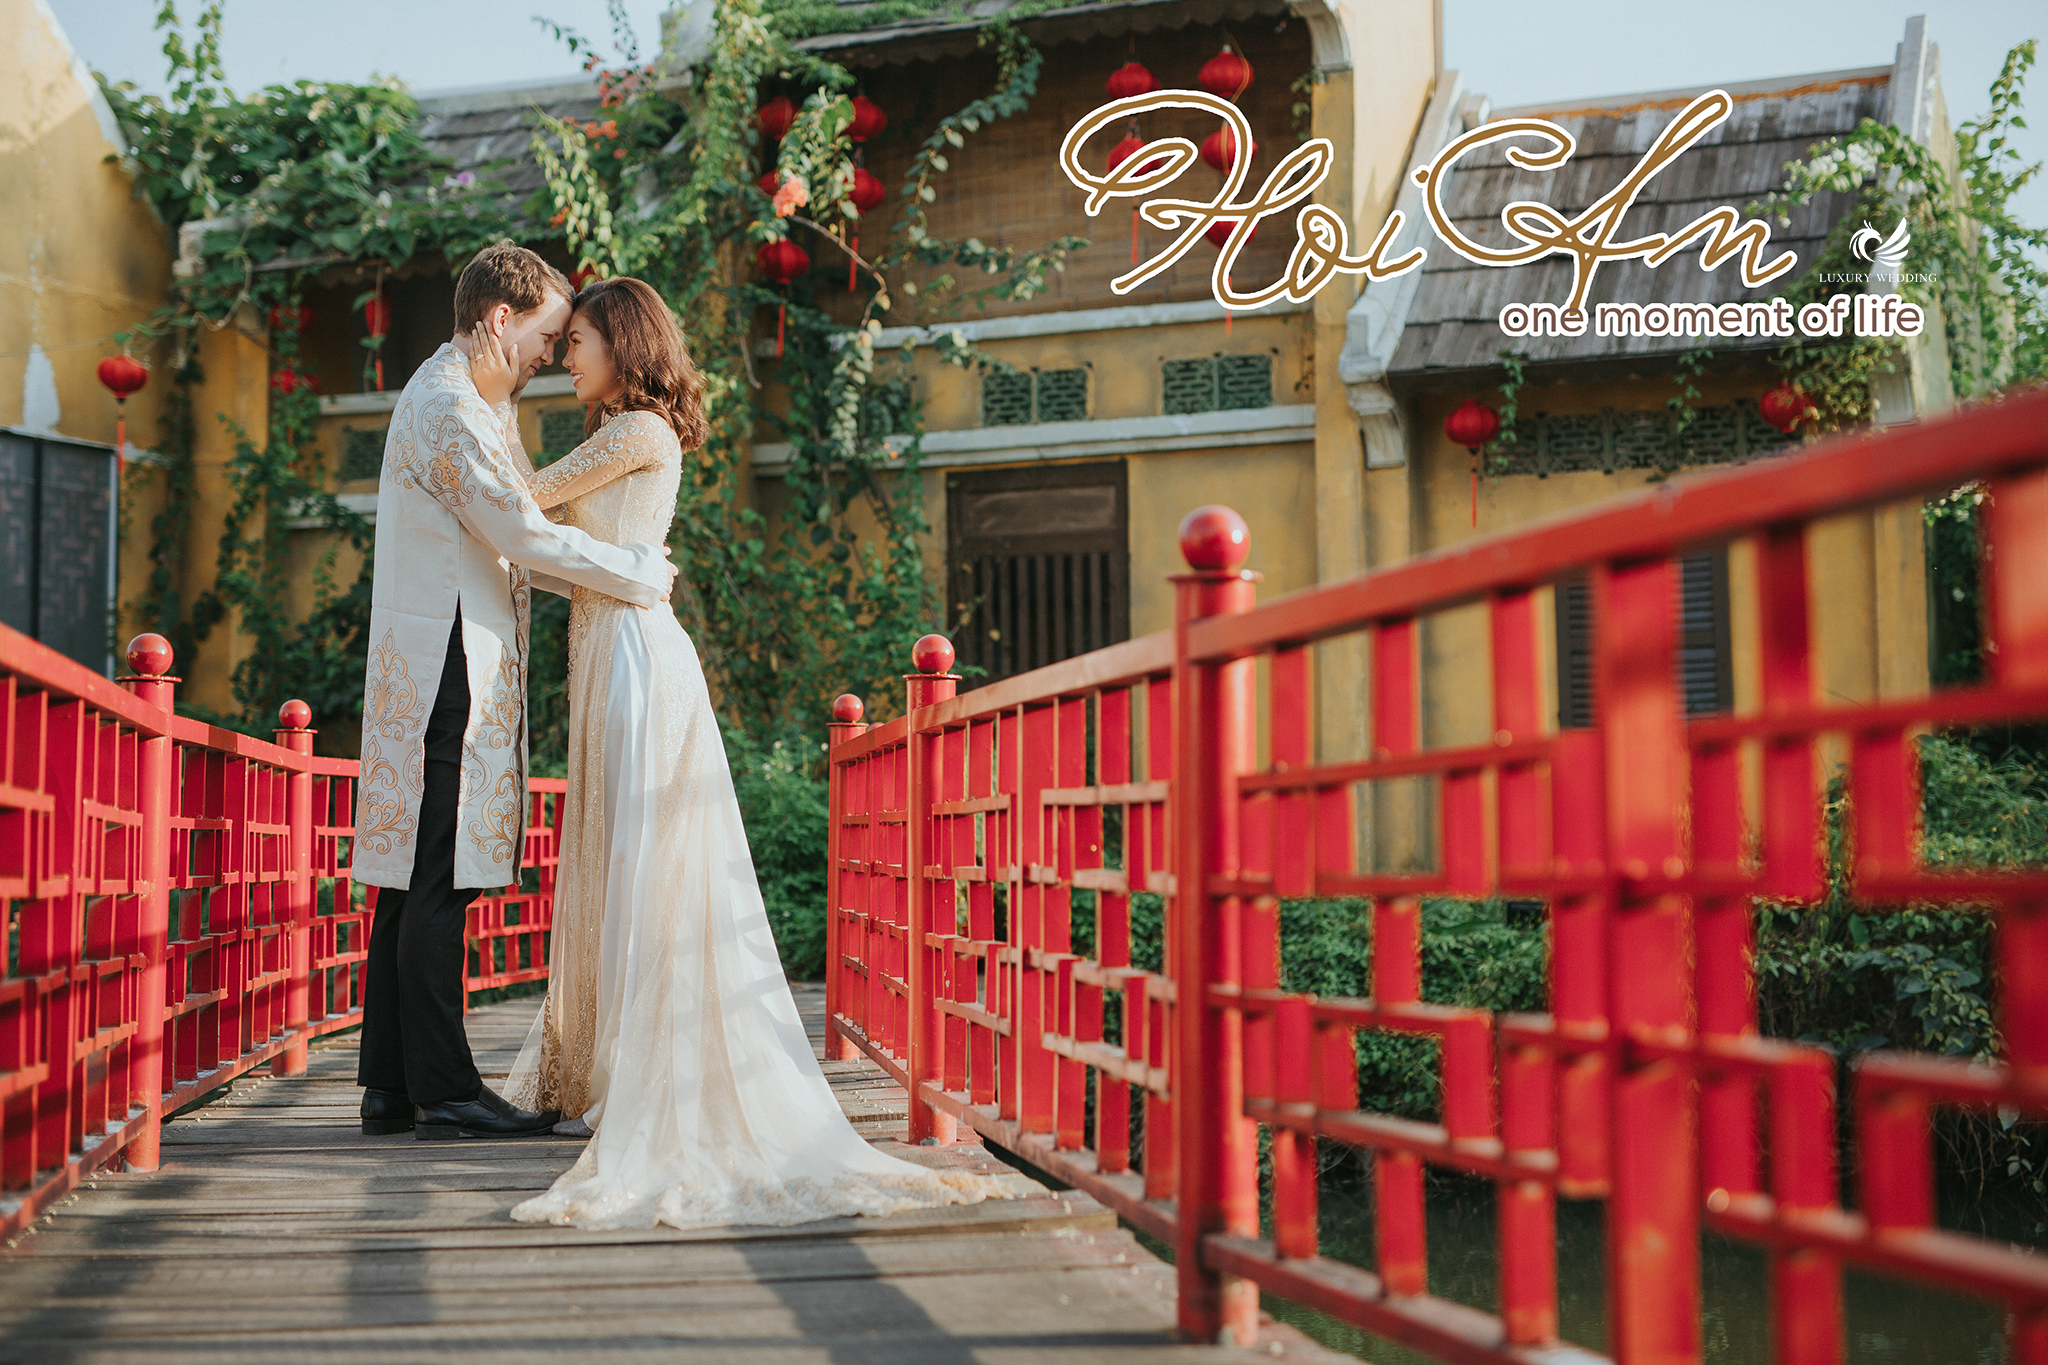 Khám phá những bức ảnh cưới rực rỡ và ấn tượng từ phim trường Sài Gòn, với vẻ đẹp sôi động và năng động của thành phố, để thể hiện tình yêu và sự vui tươi của cặp đôi trong ngày trọng đại.